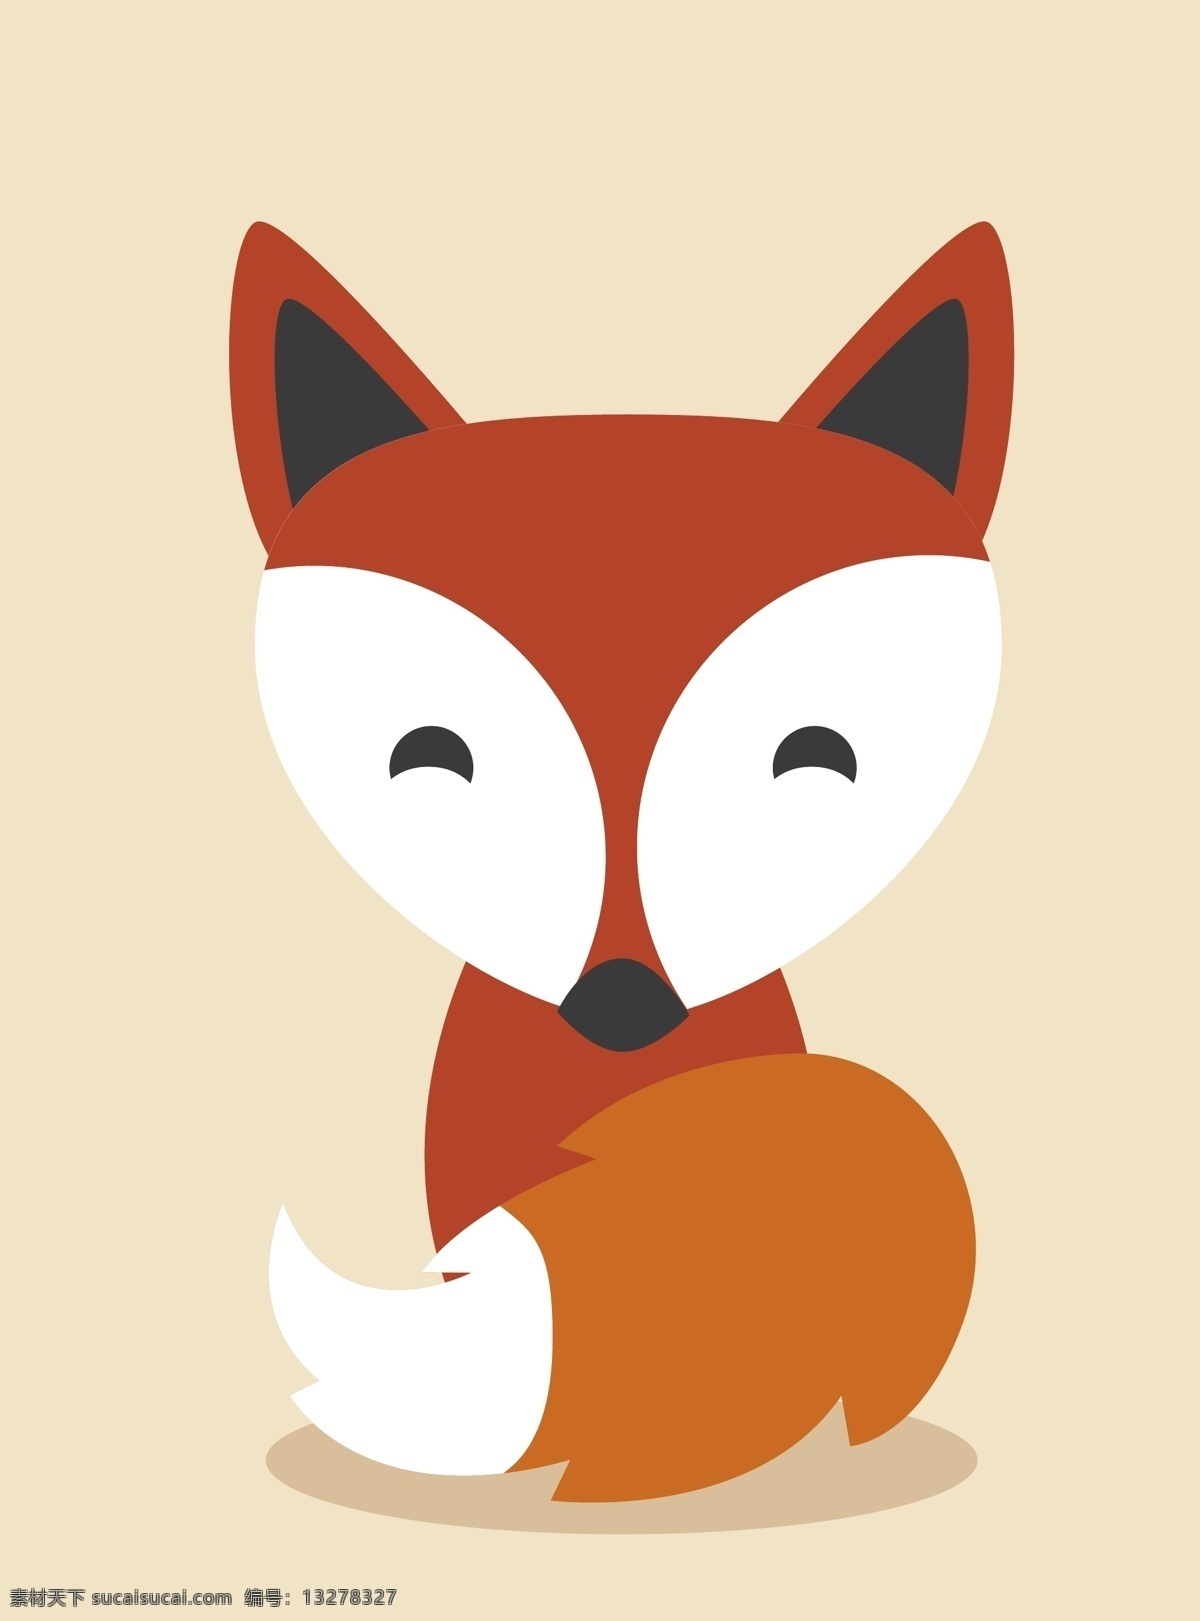 卡通狐狸 卡通动物 野生动物 五颜六色 可爱 漂亮 哺乳动物 狐狸 生物世界